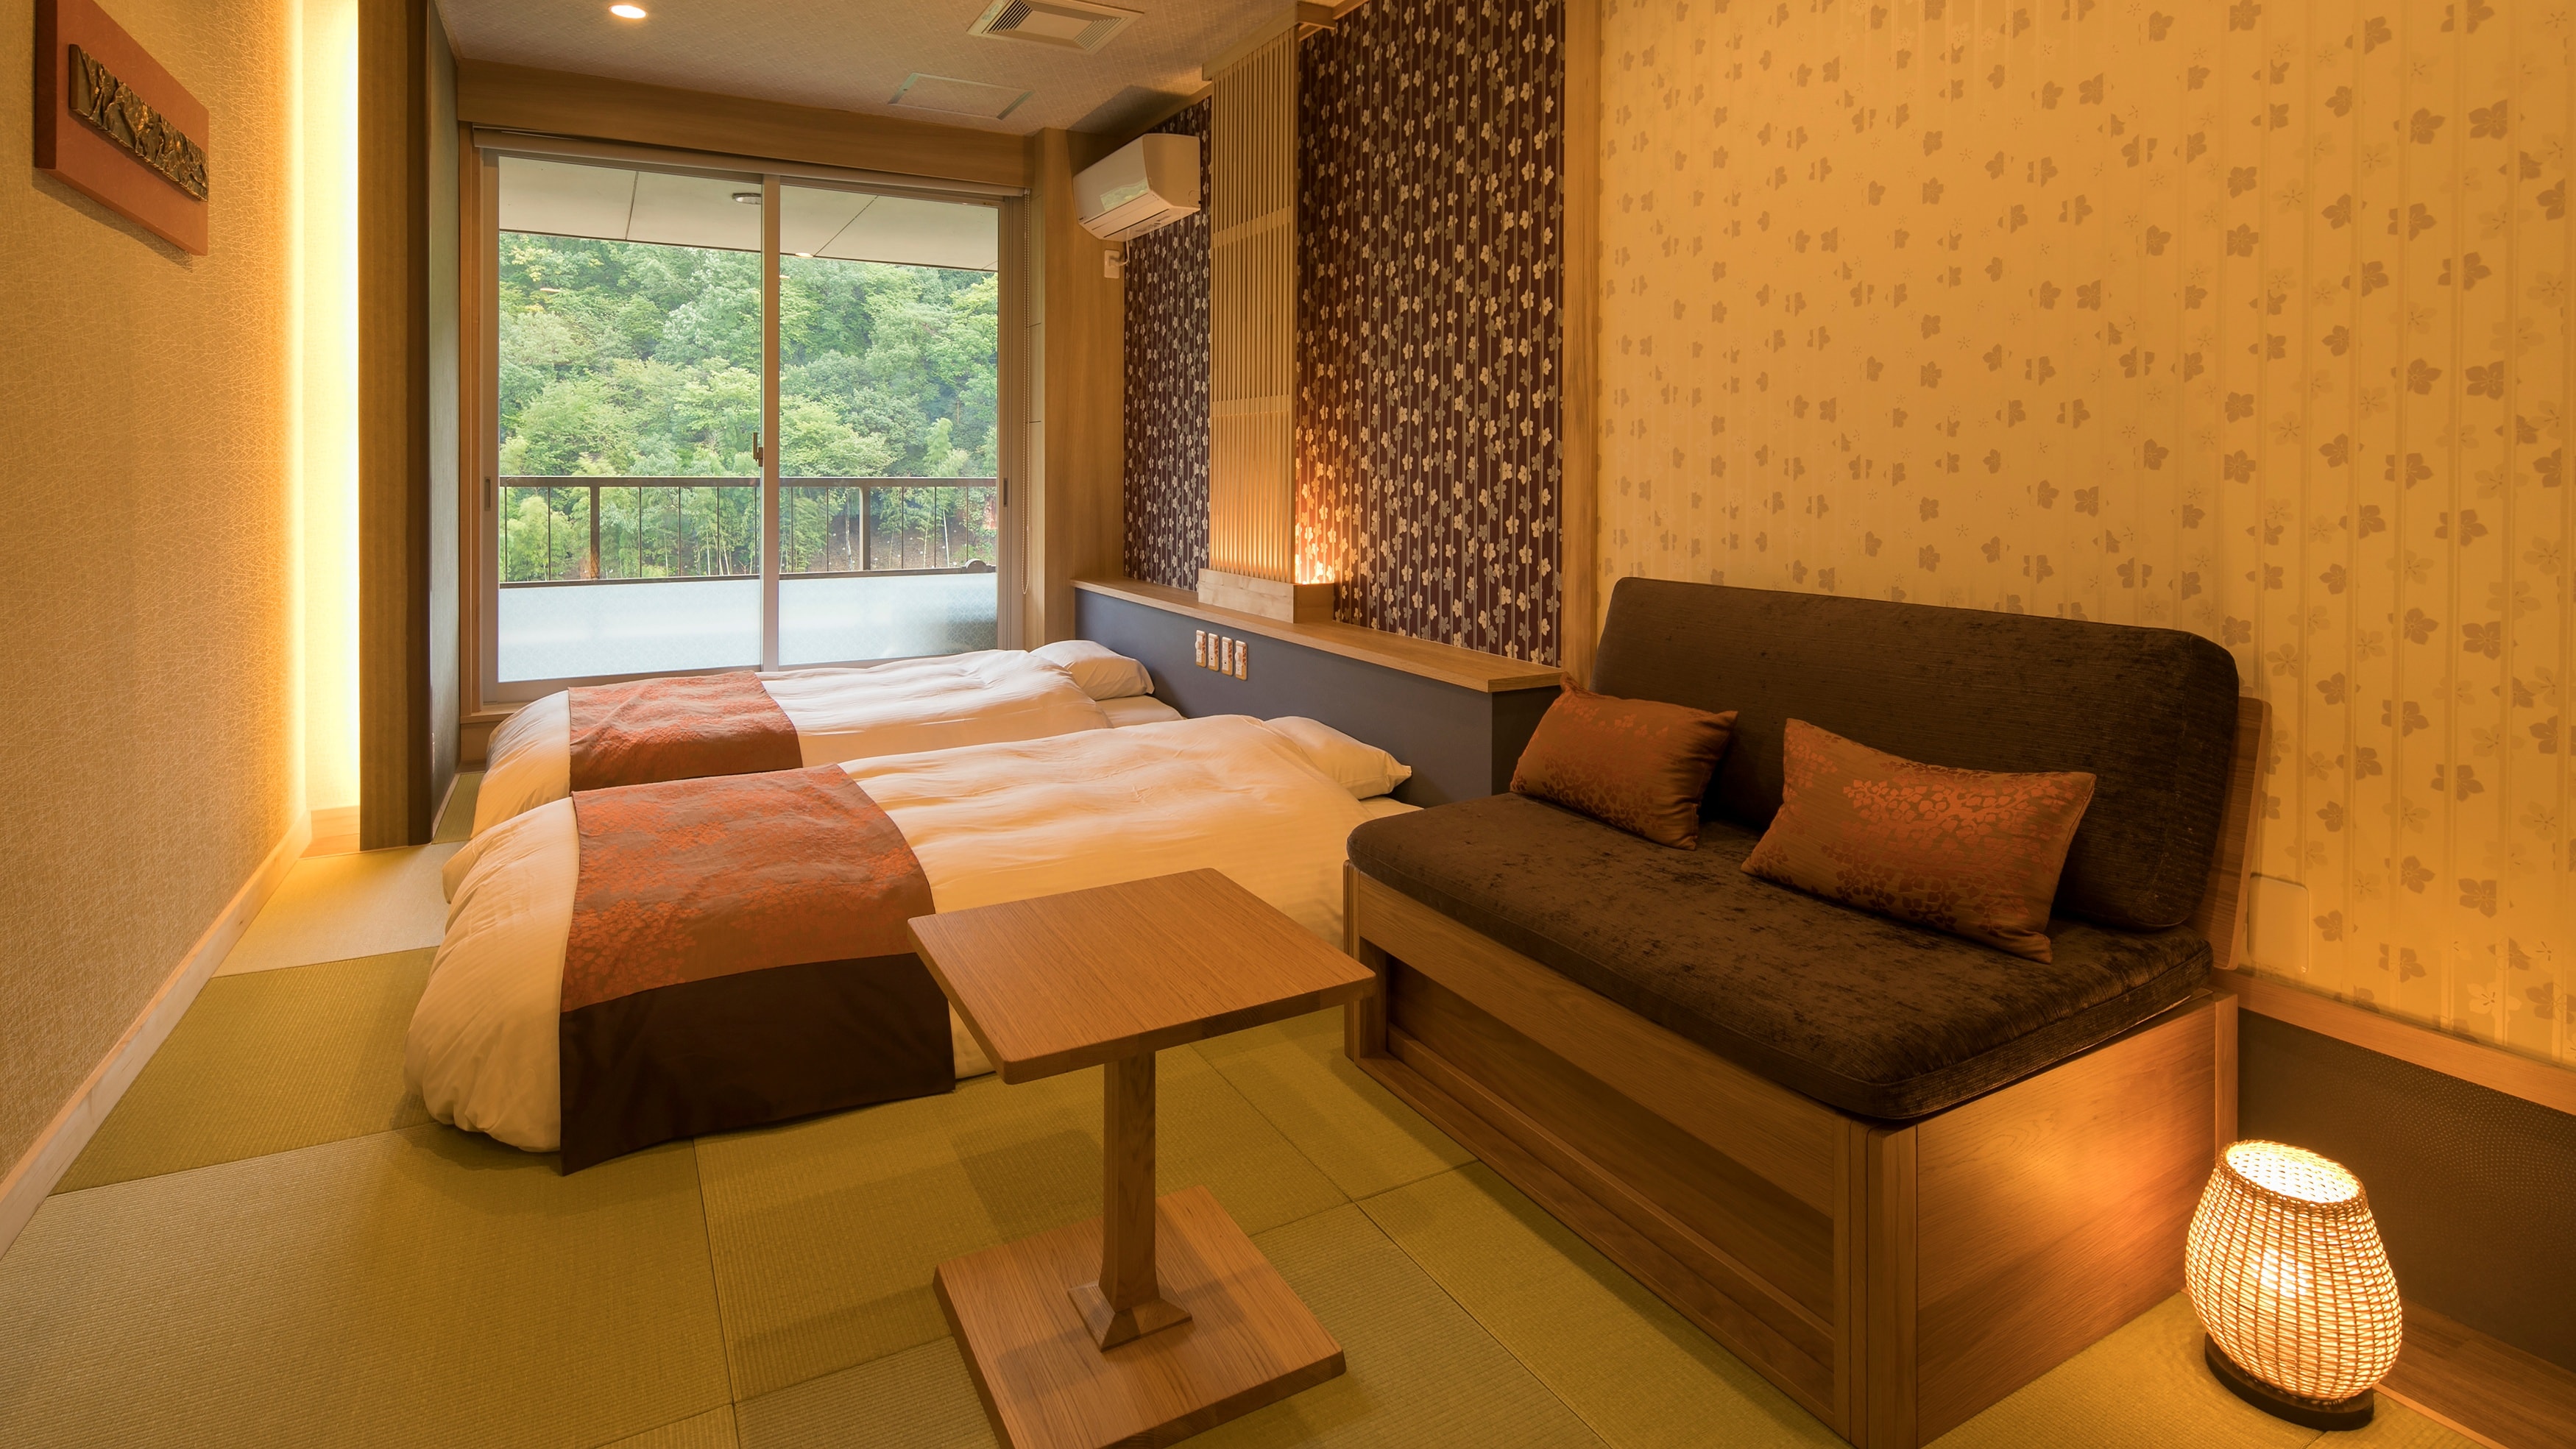 【일본식 트윈】 로우 침대 방. 3명으로 이용 시에는 앞의 소파가 침대로 재조합합니다.